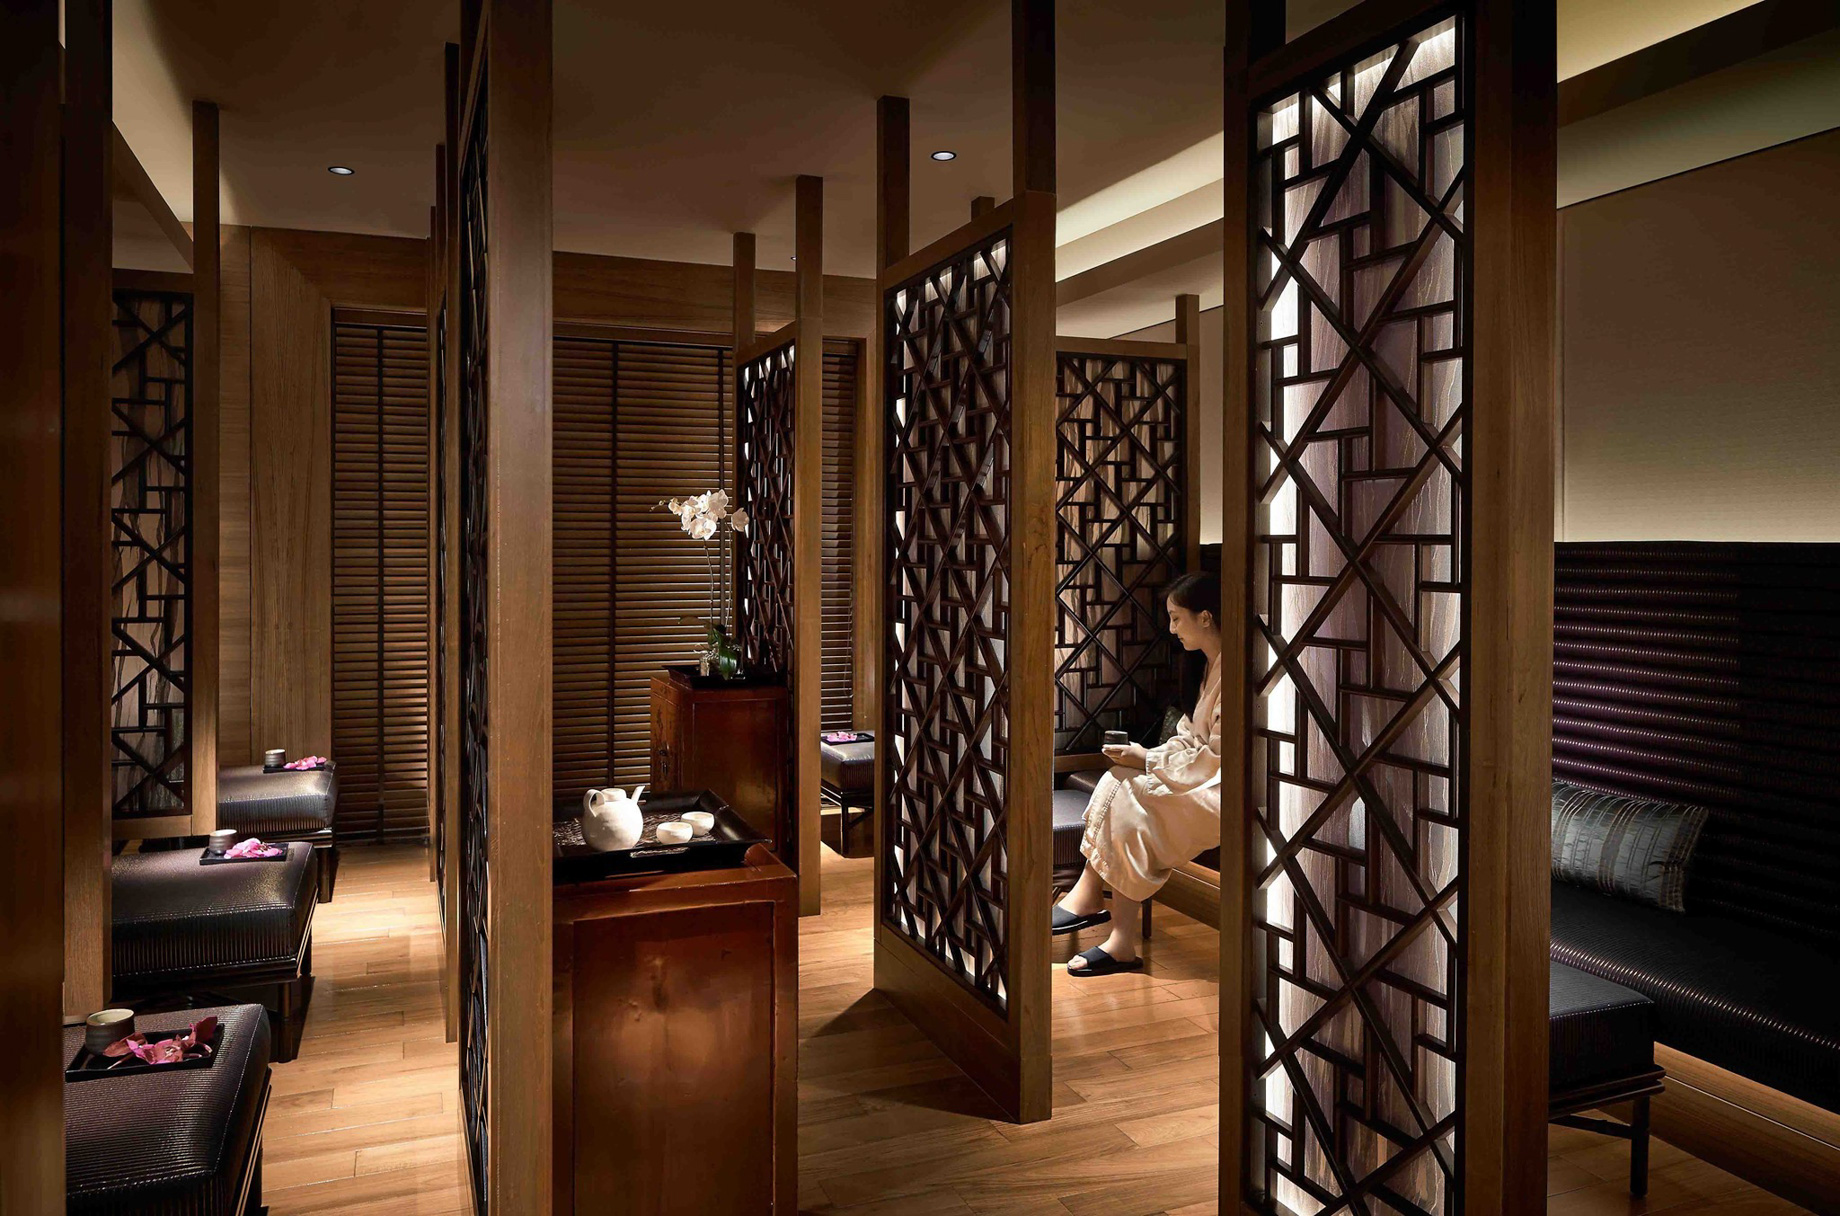 Mandarin Oriental, Hong Kong Hotel – Hong Kong, China – Spa Relaxation Room